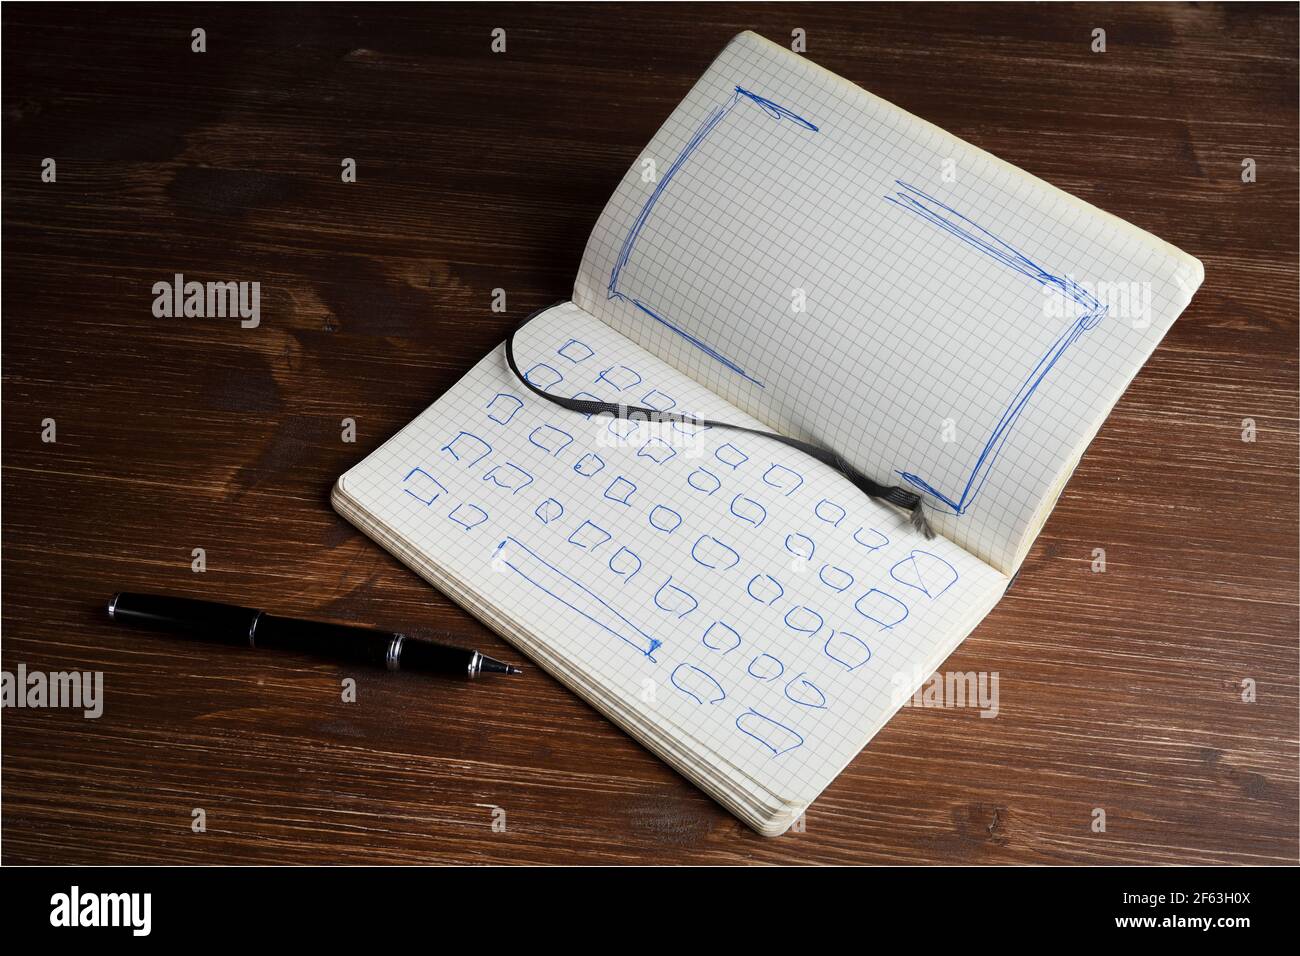 un ordinateur portable avec le dessin du clavier et du écran d'un ordinateur portable Banque D'Images